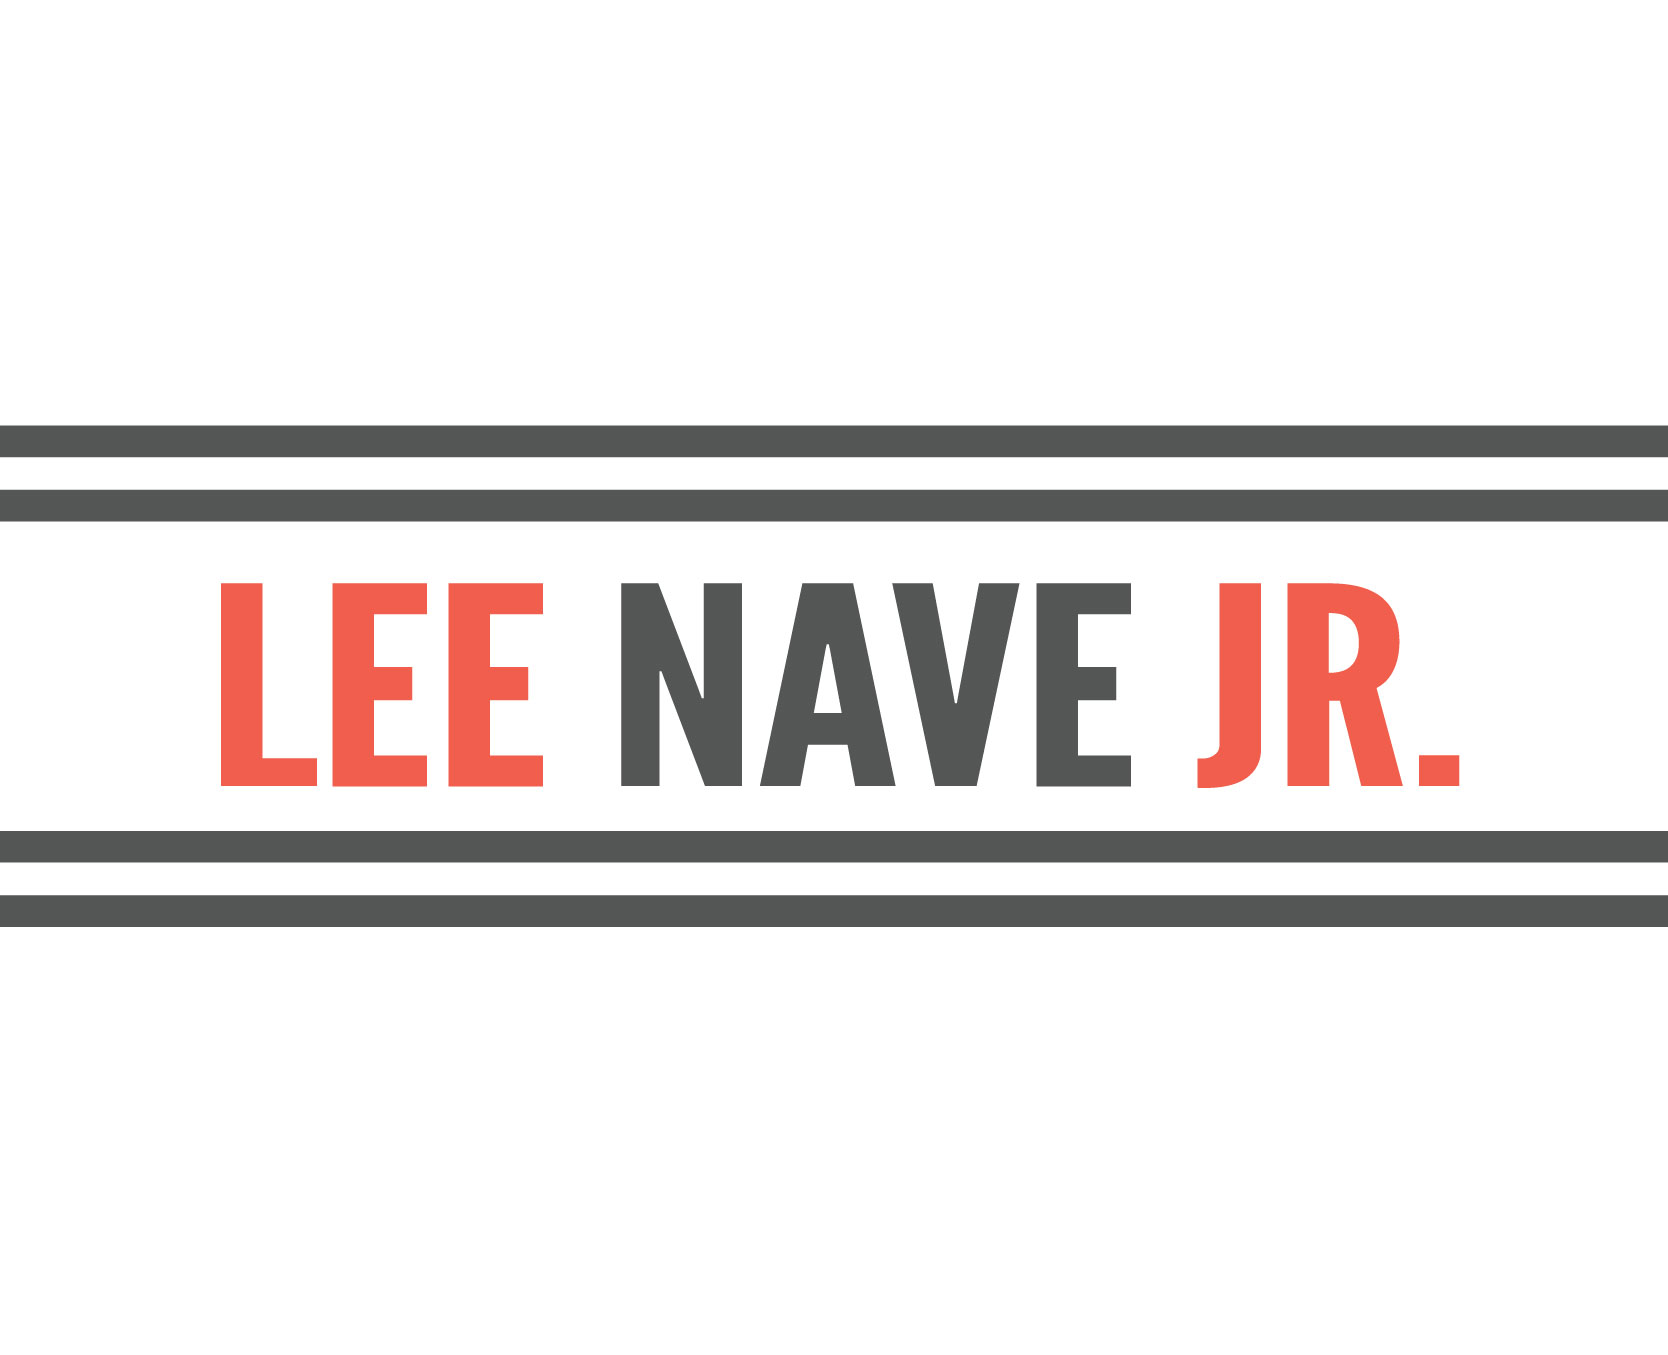 Lee Nave Jr